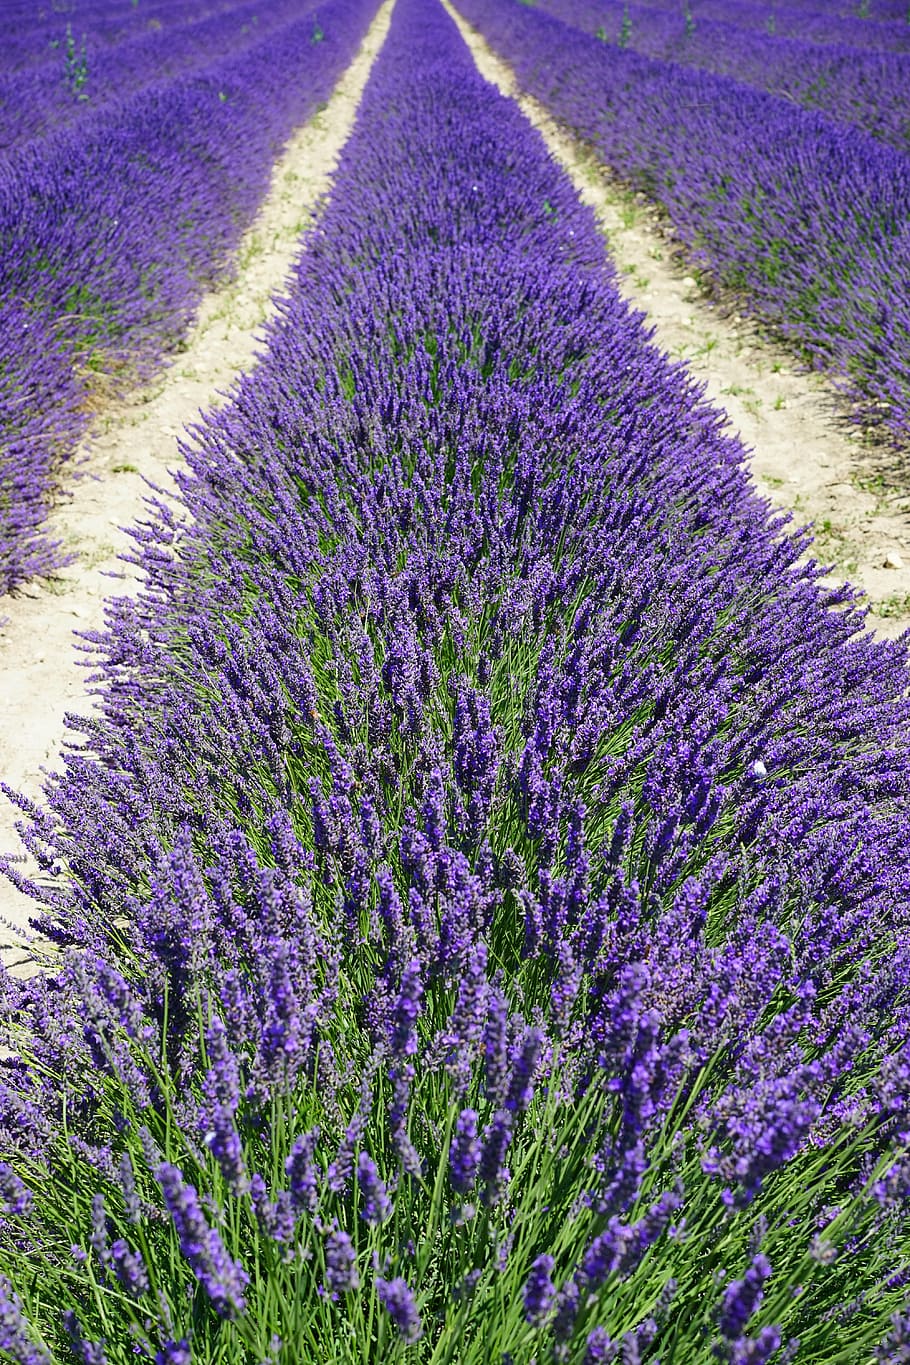 ungu, bidang bunga lavander, bidang lavender, jalur, jauh, bunga lavender, bunga, flora, lavender, biru